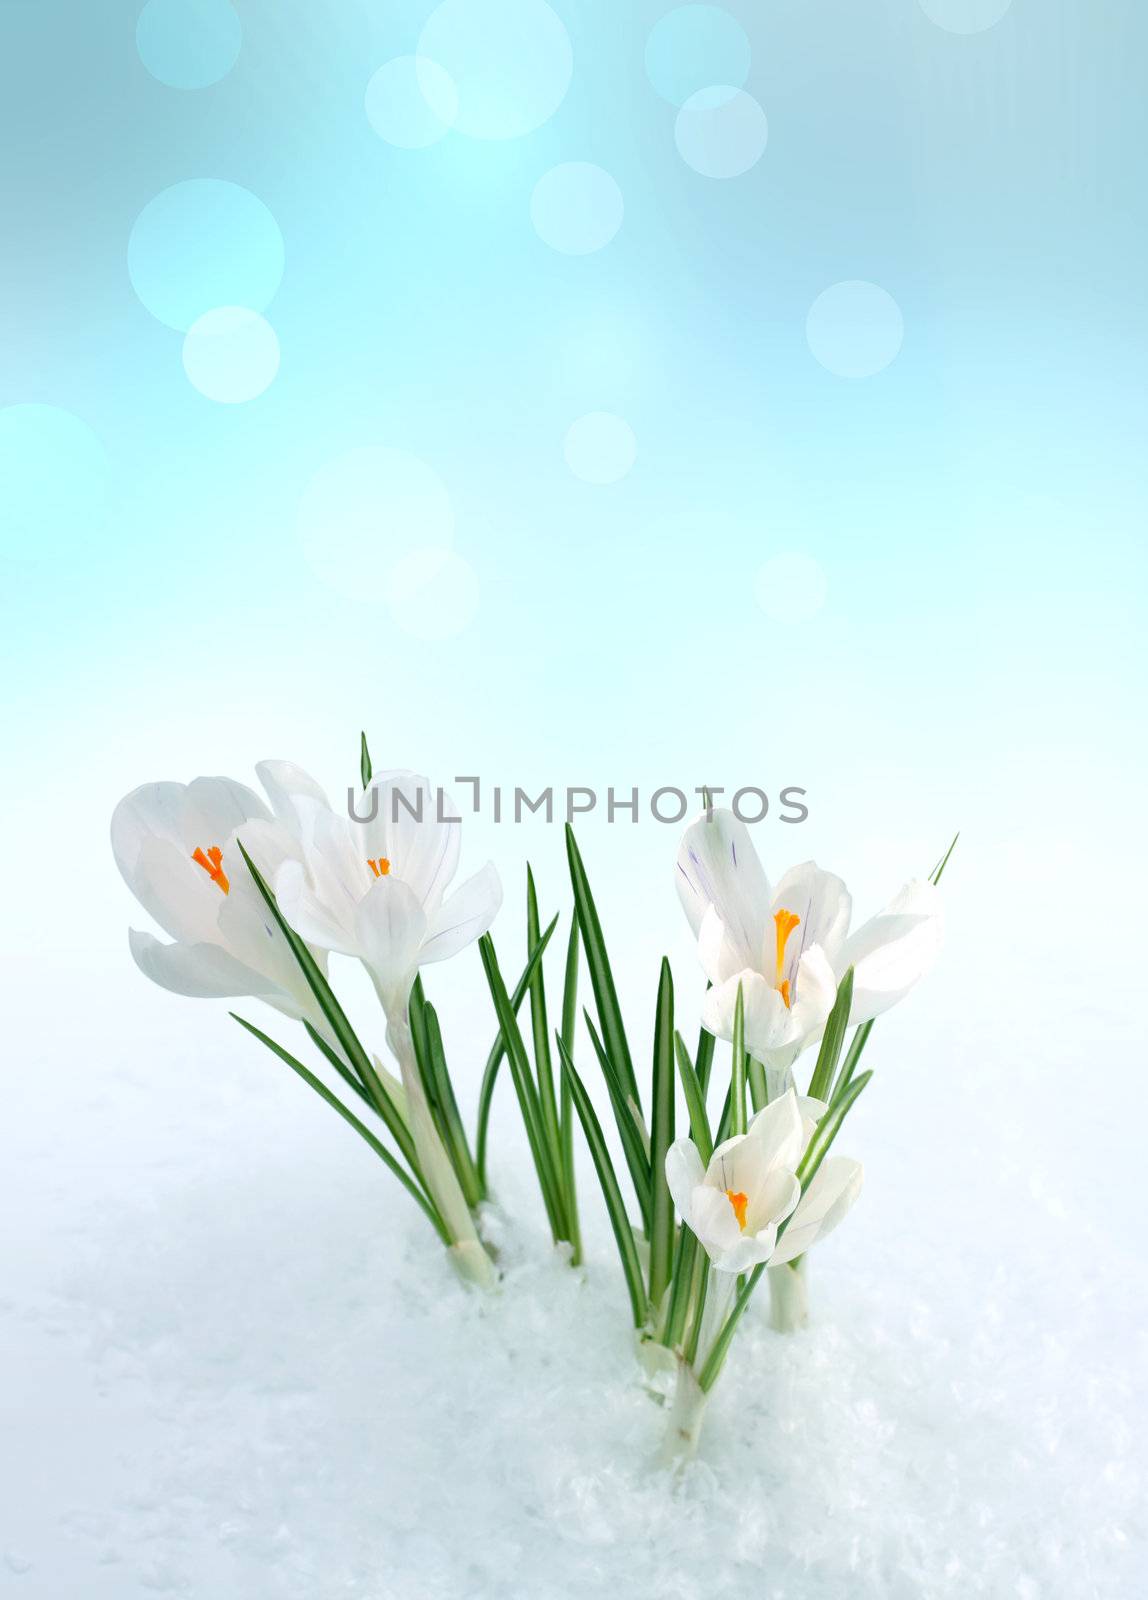 snowdrop in snow by rudchenko